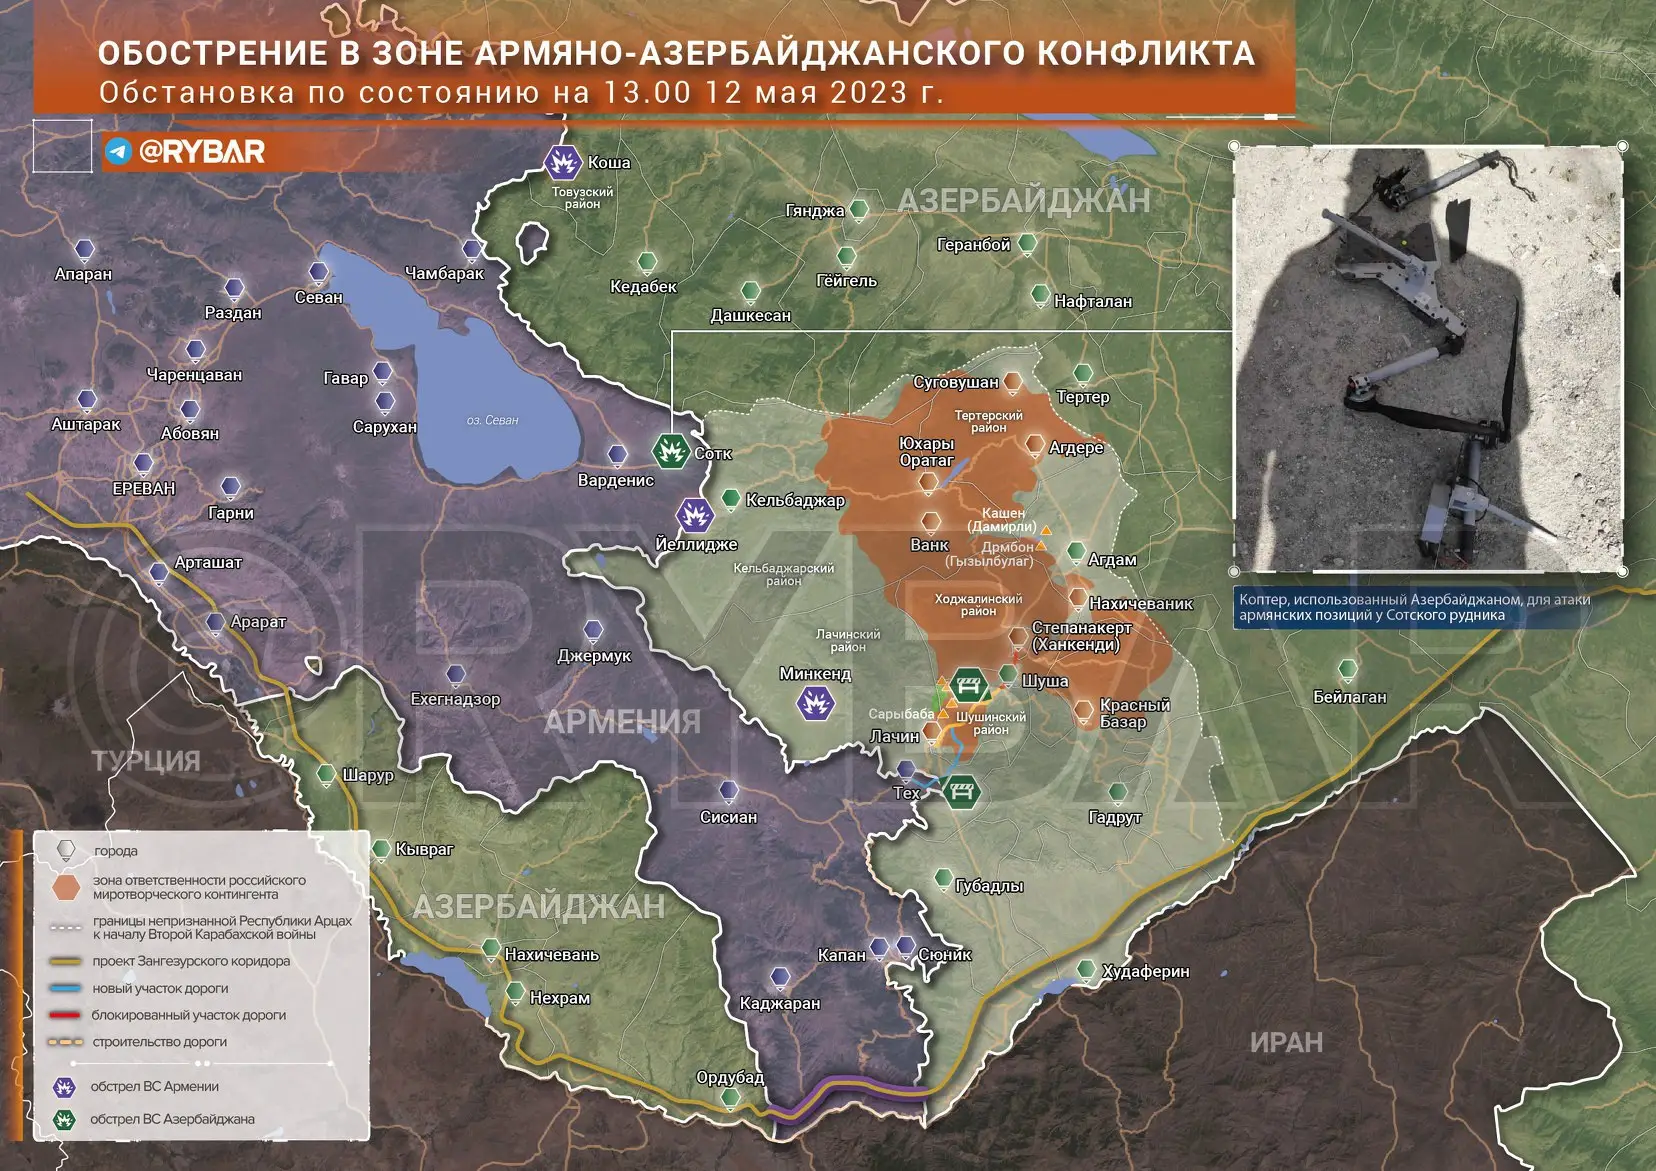 Обострение в зоне армяно-азербайджанского конфликта на 13.00 12 мая 2023 года